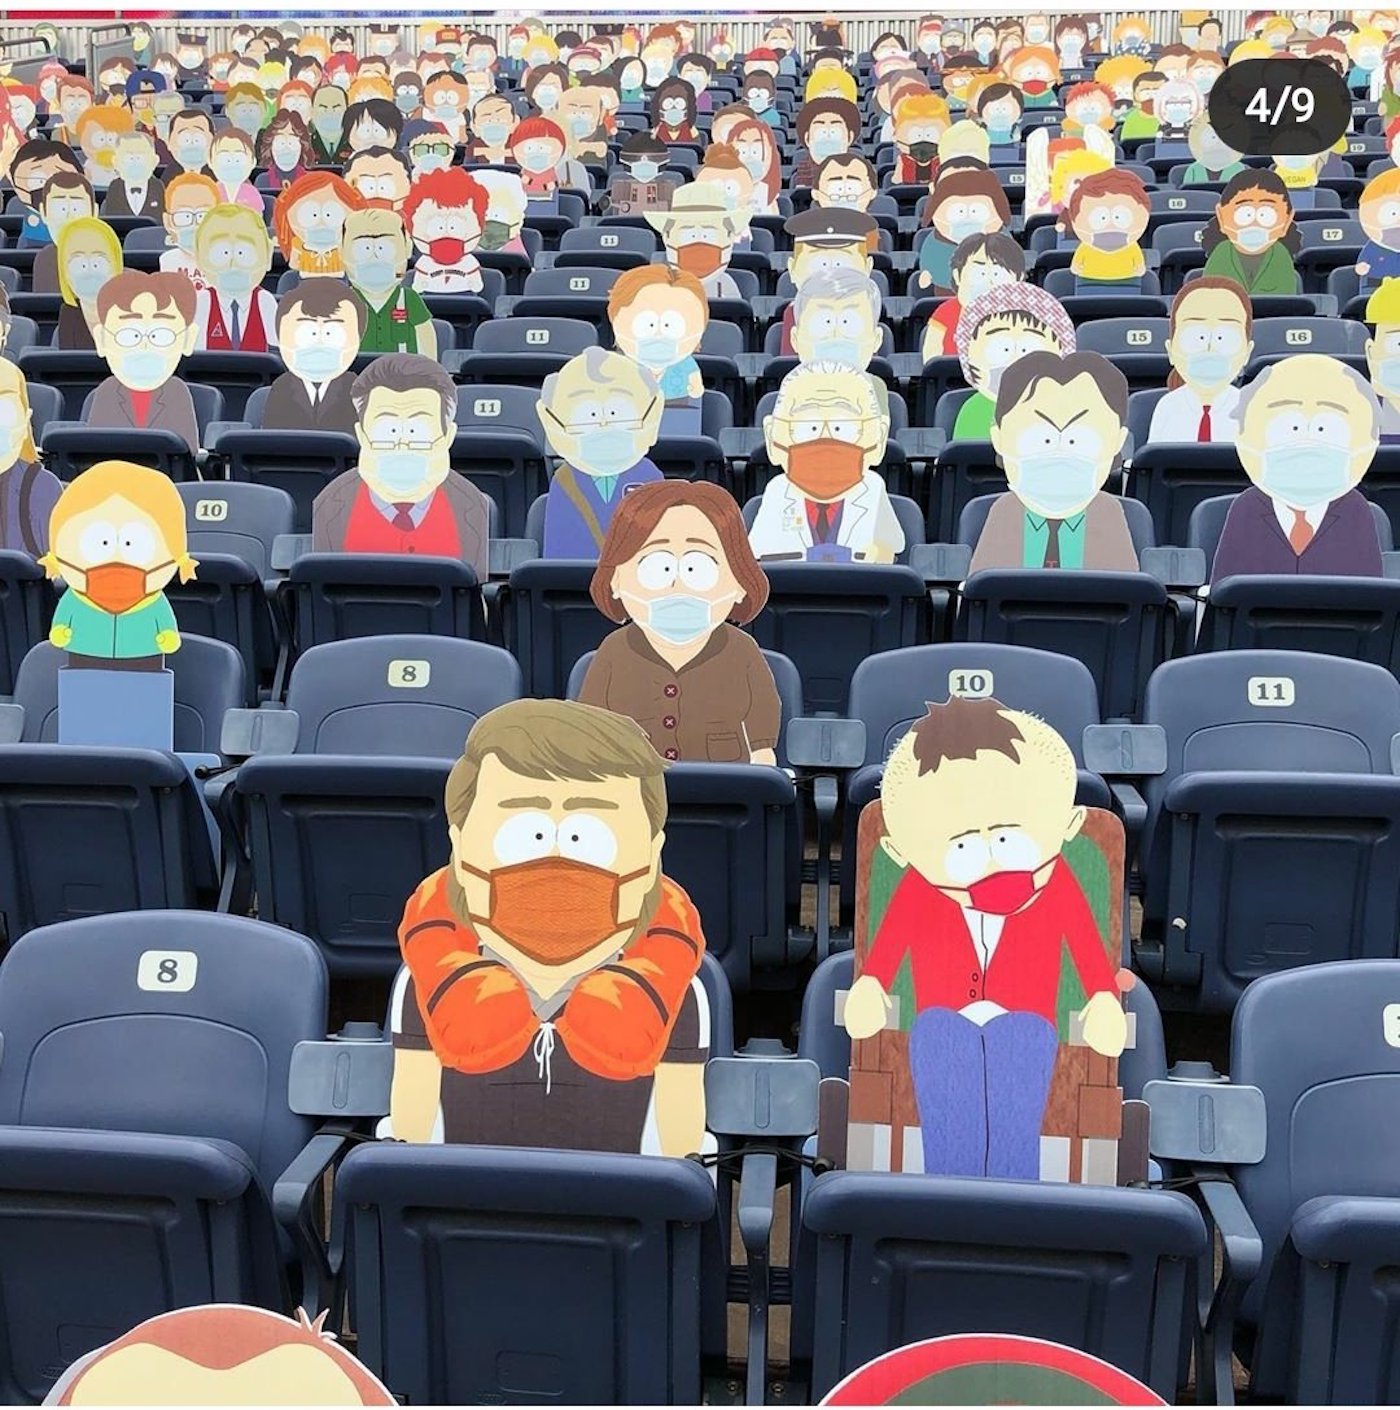 États-Unis : une tribune remplie de personnages de South Park pour simuler un public à l'écran